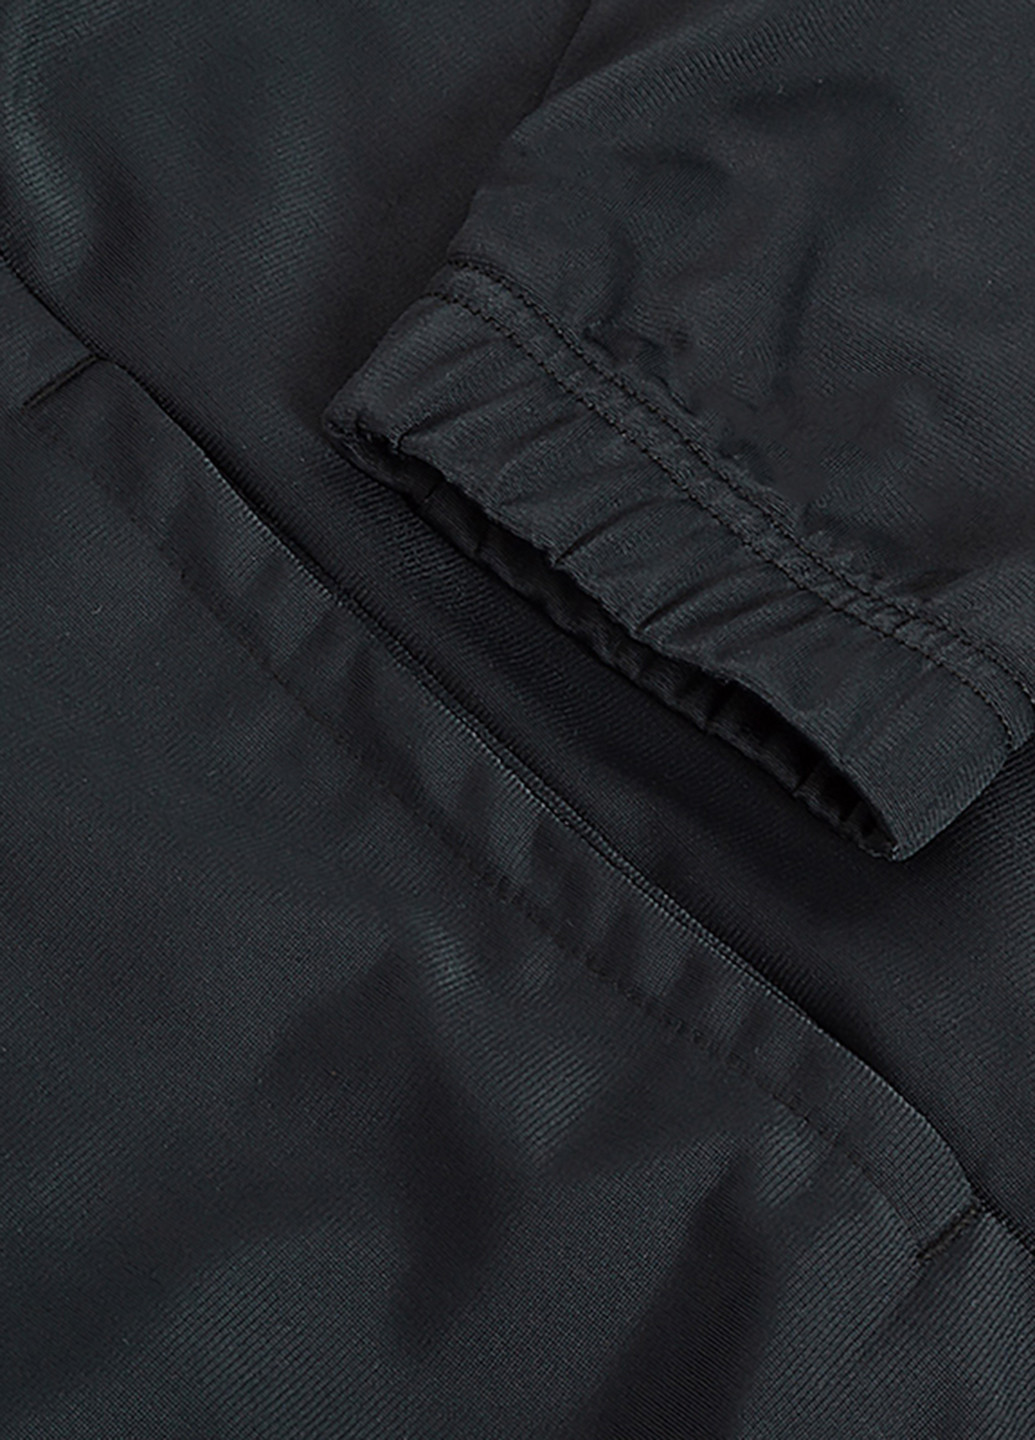 Черно-белый демисезонный костюм (толстовка, брюки) брючный Nike M NSW CE TRK SUIT PK